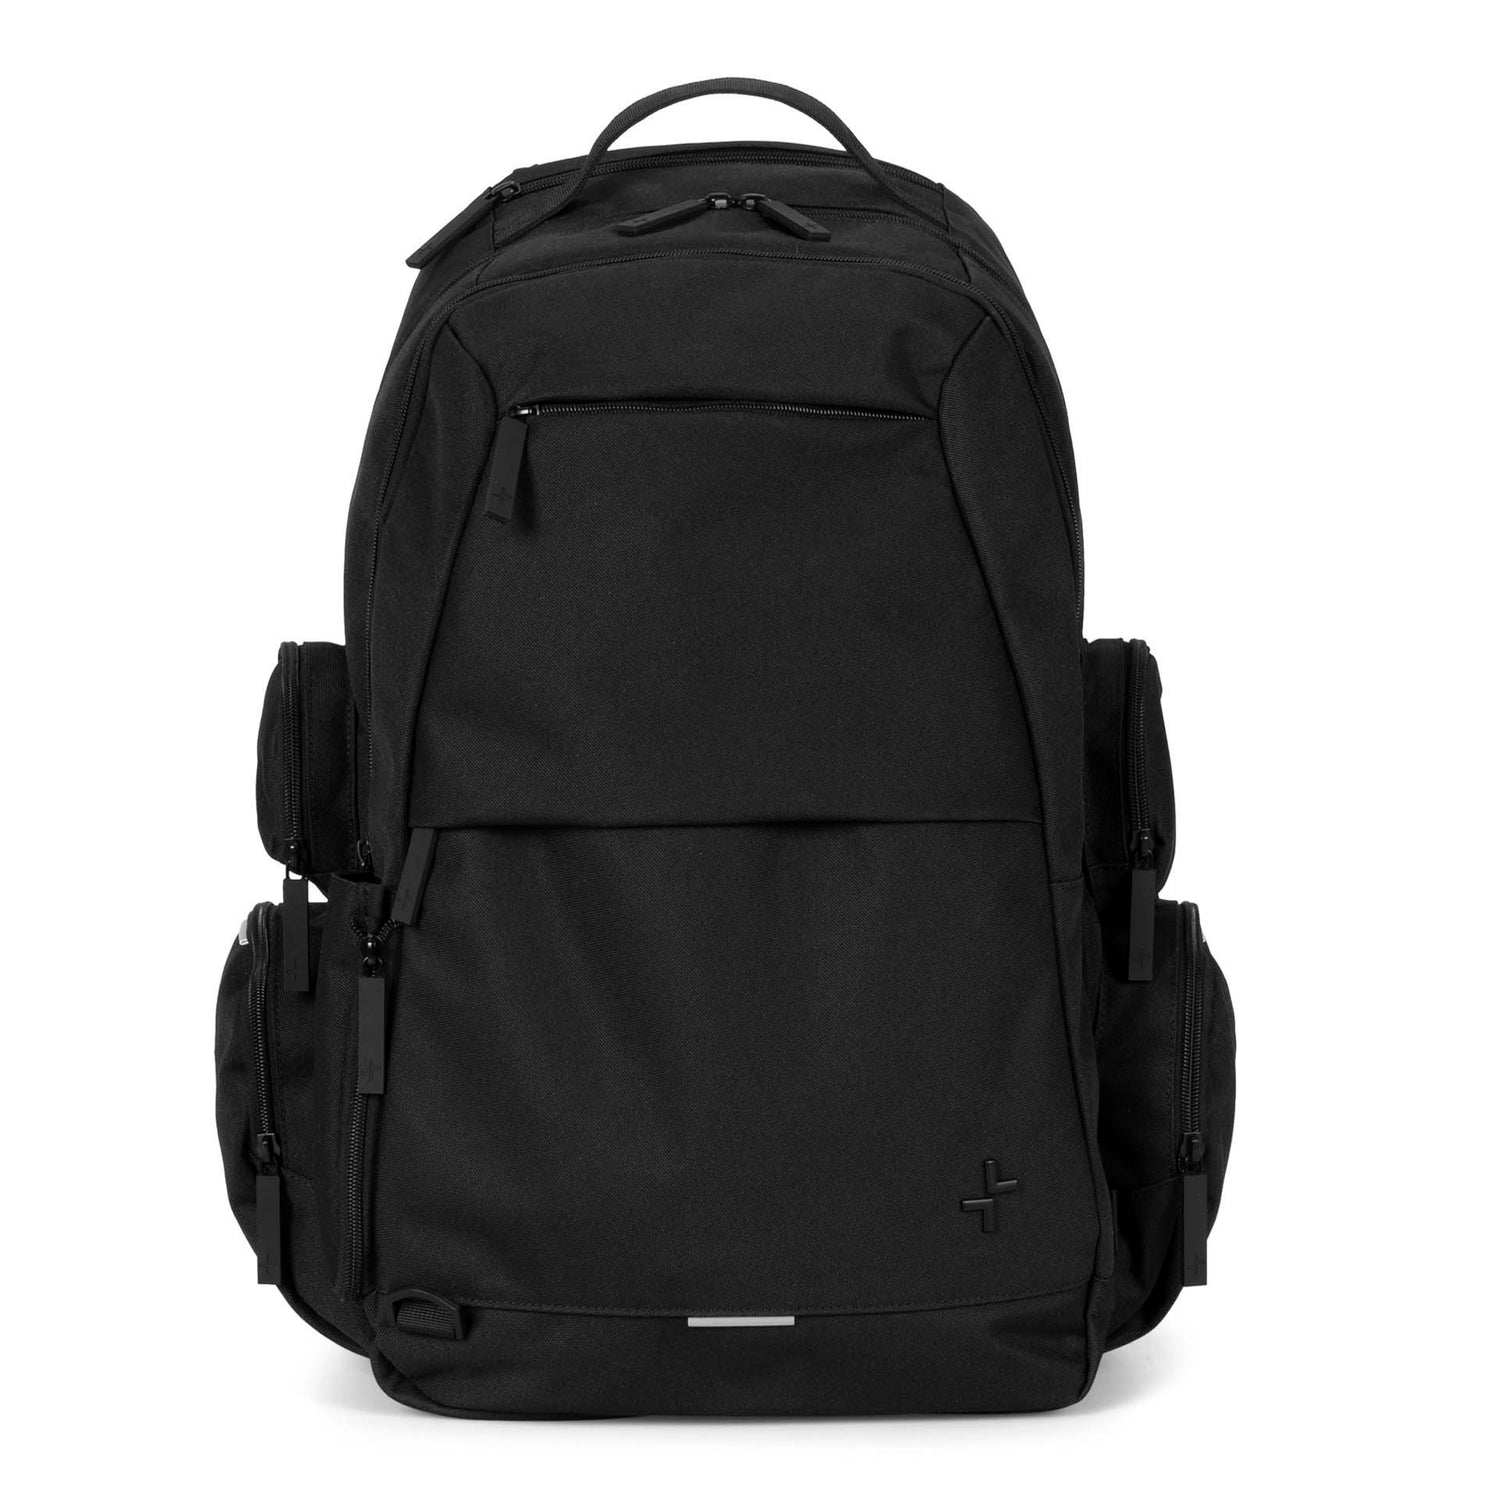 Cartier 3.0 15" Laptop Backpack - Bentley